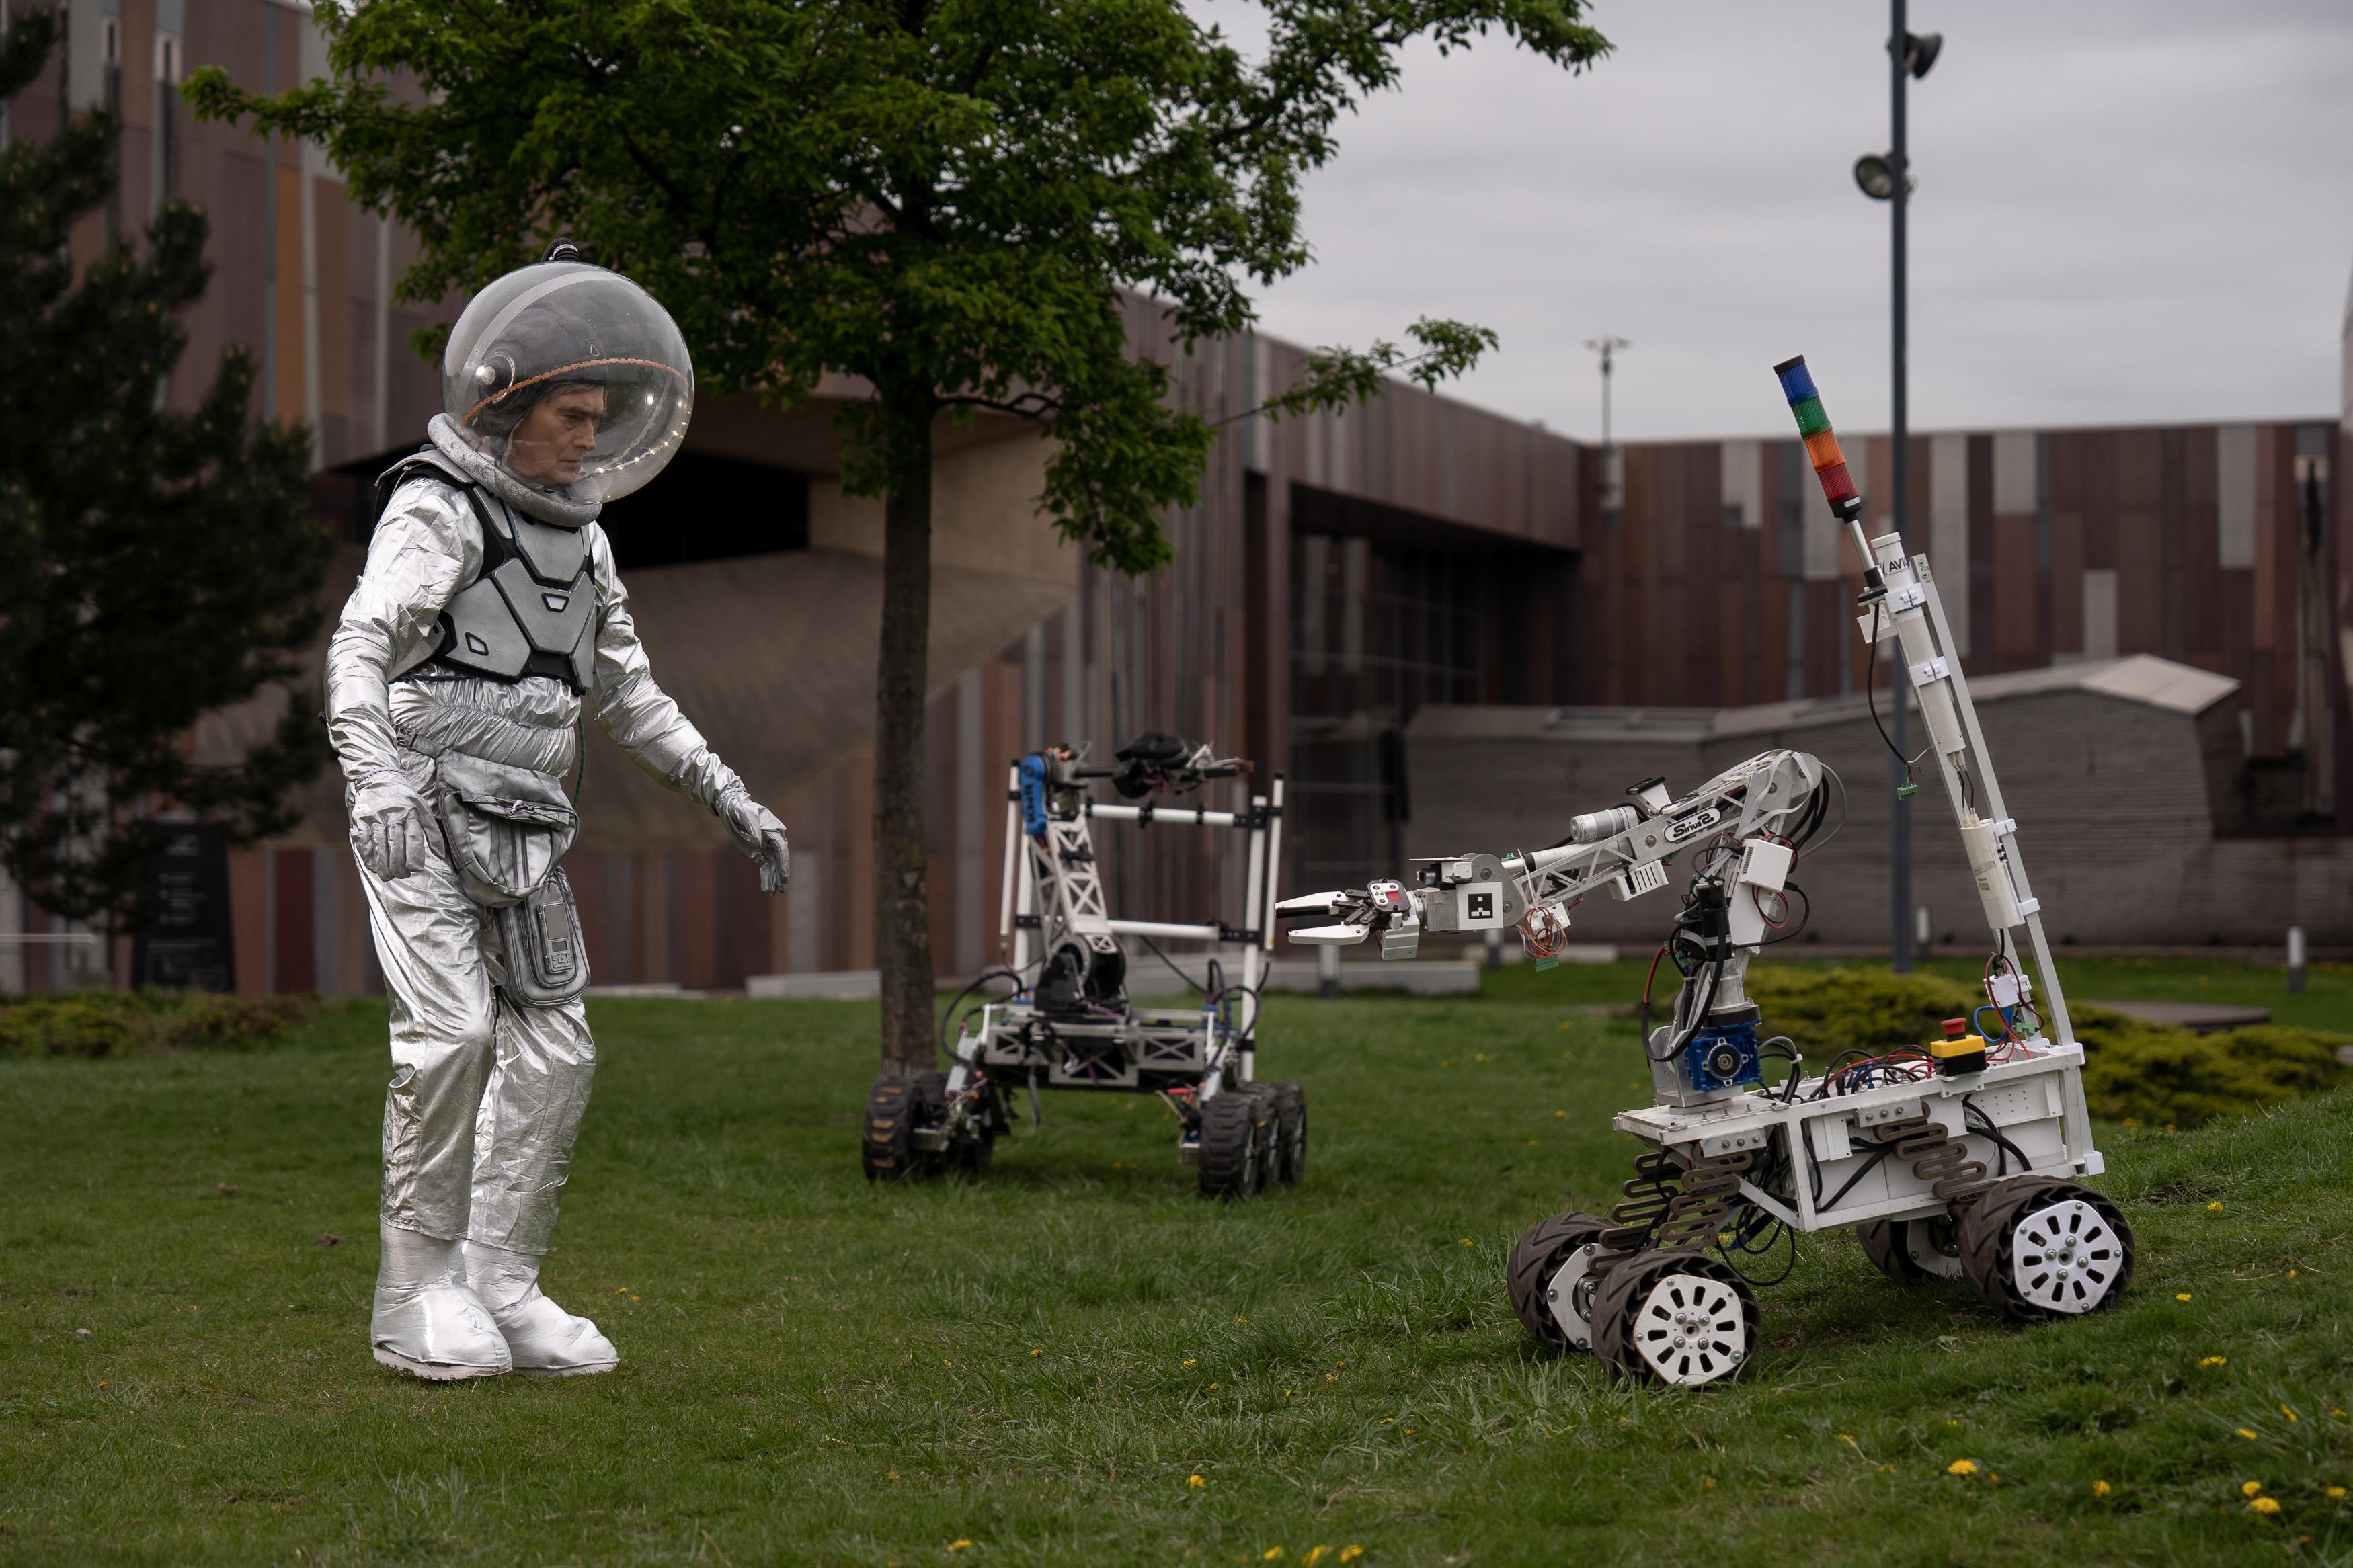 Mężczyzna w stroju astronauty stoi na trawniku przed budynkiem, przed nim dwa łaziki